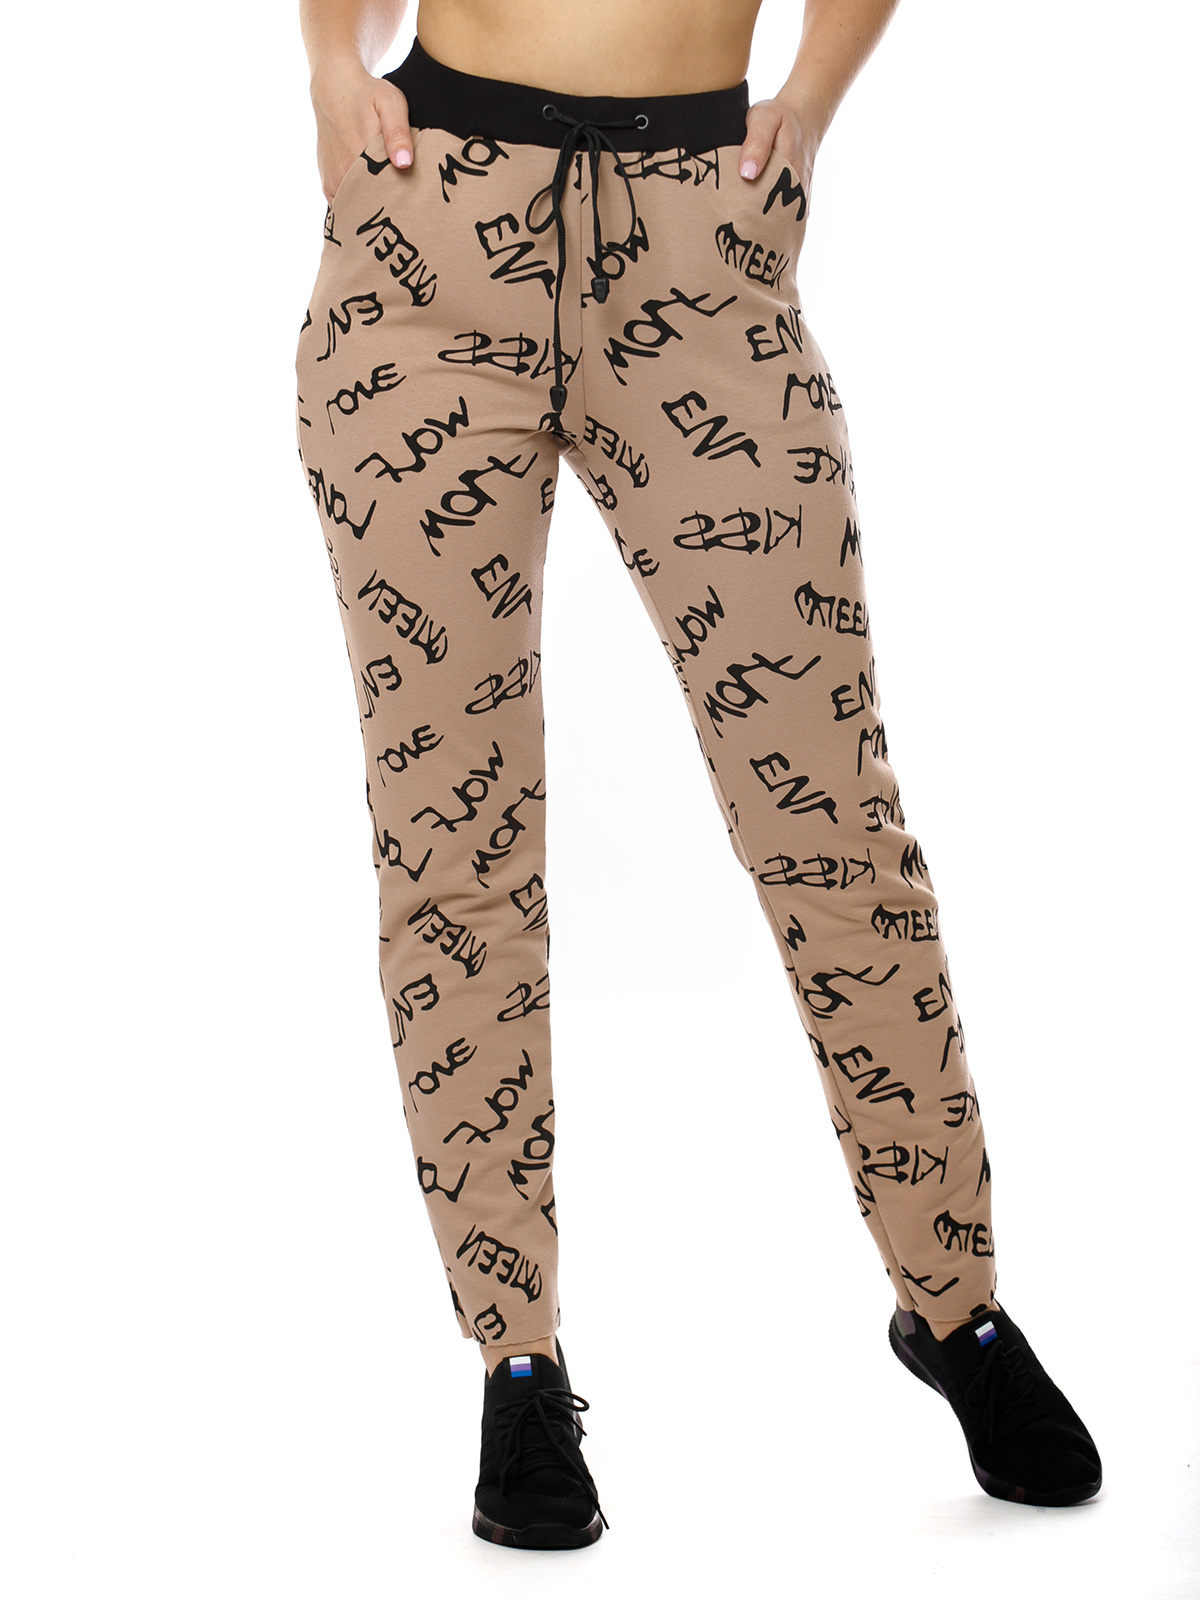 Спортивные брюки женские НСД Трикотаж 16-0775 коричневые 52 RU